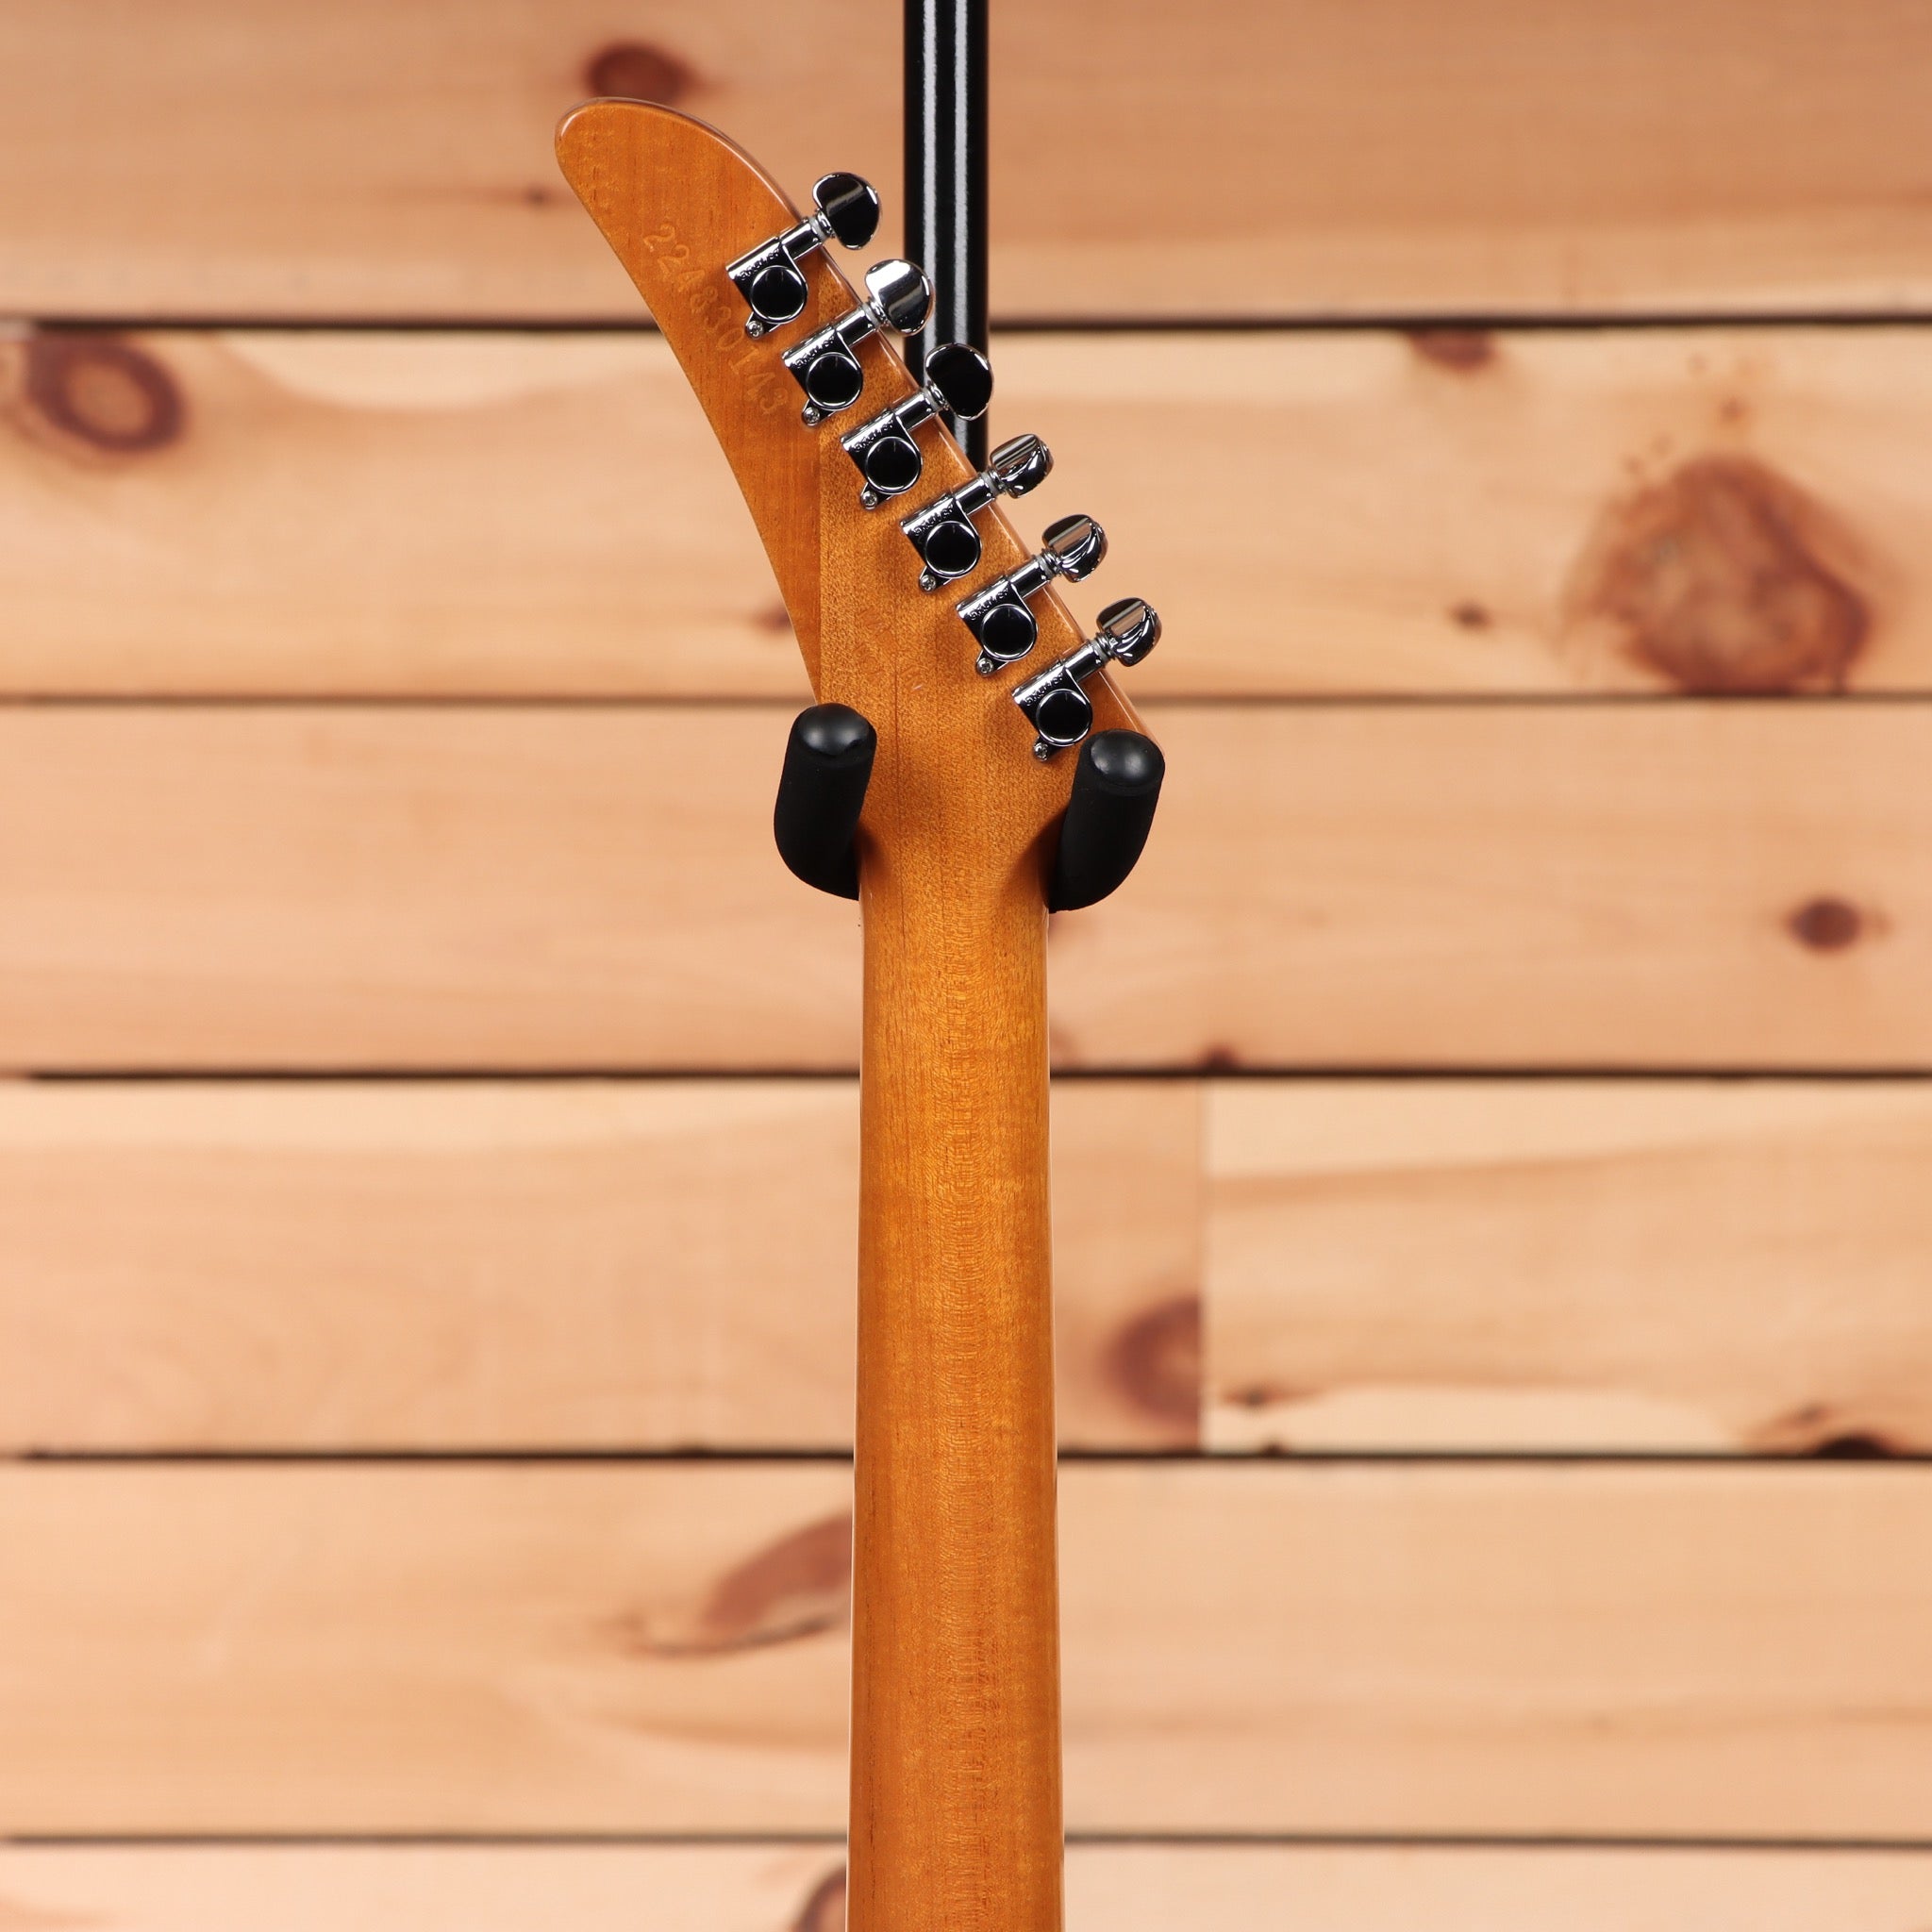 Gibson - Explorer Antique Natural Guitare Electrique 